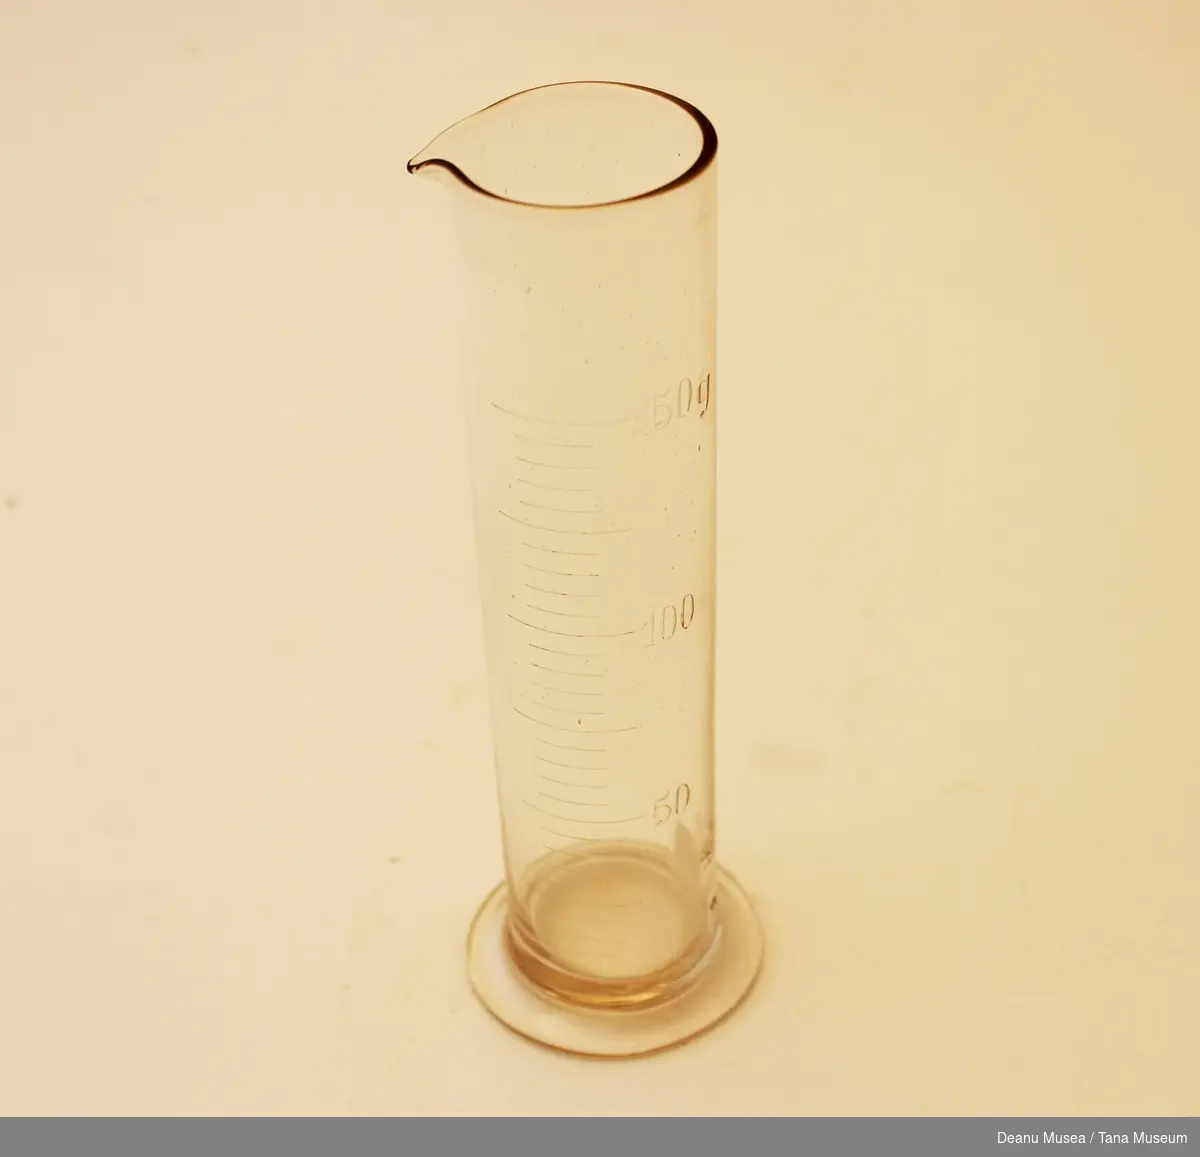 Sylinderformet måleglass hvor det er målestreker for hver 10 g/ml opp til 150ml/g.